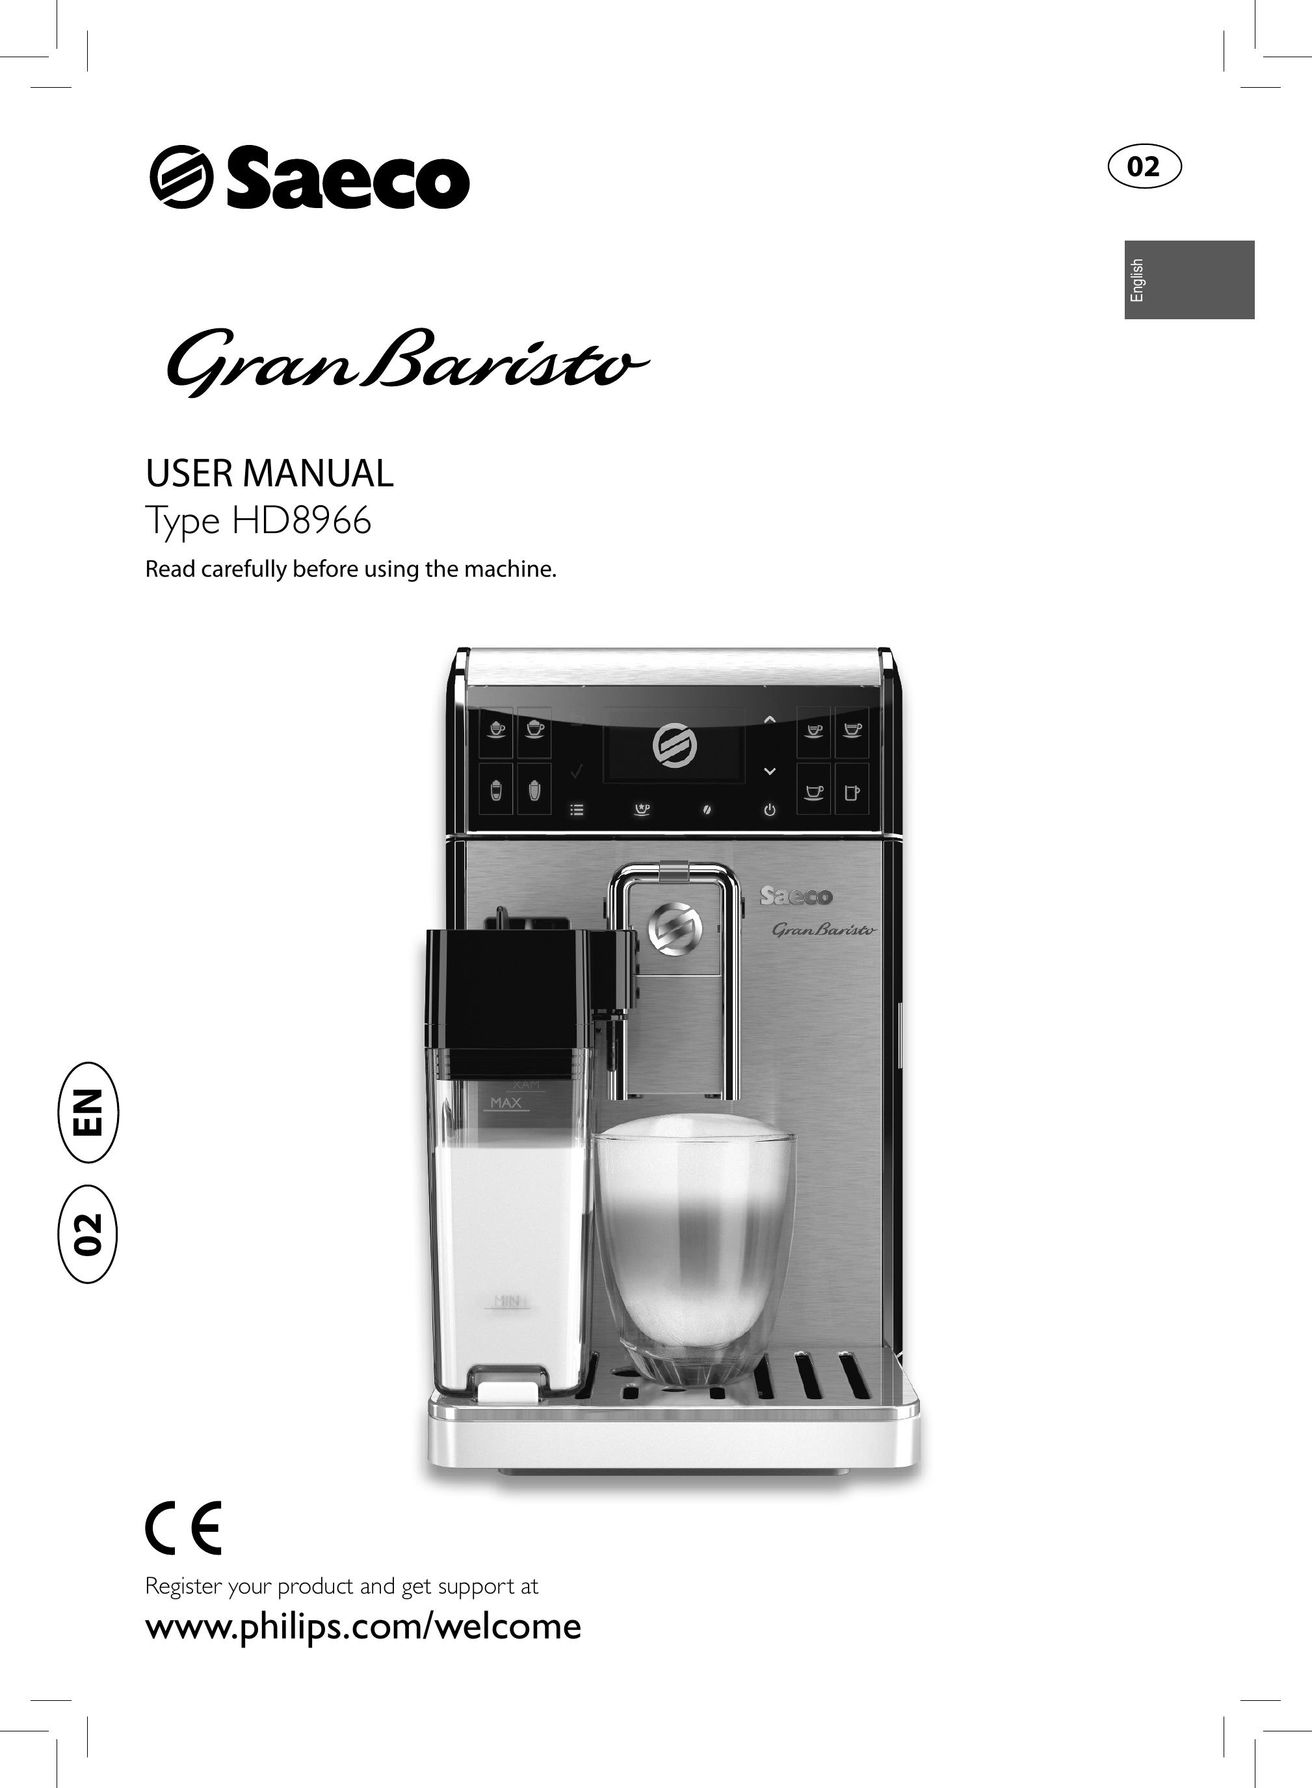 Saeco Coffee Makers HD8966 Espresso Maker User Manual